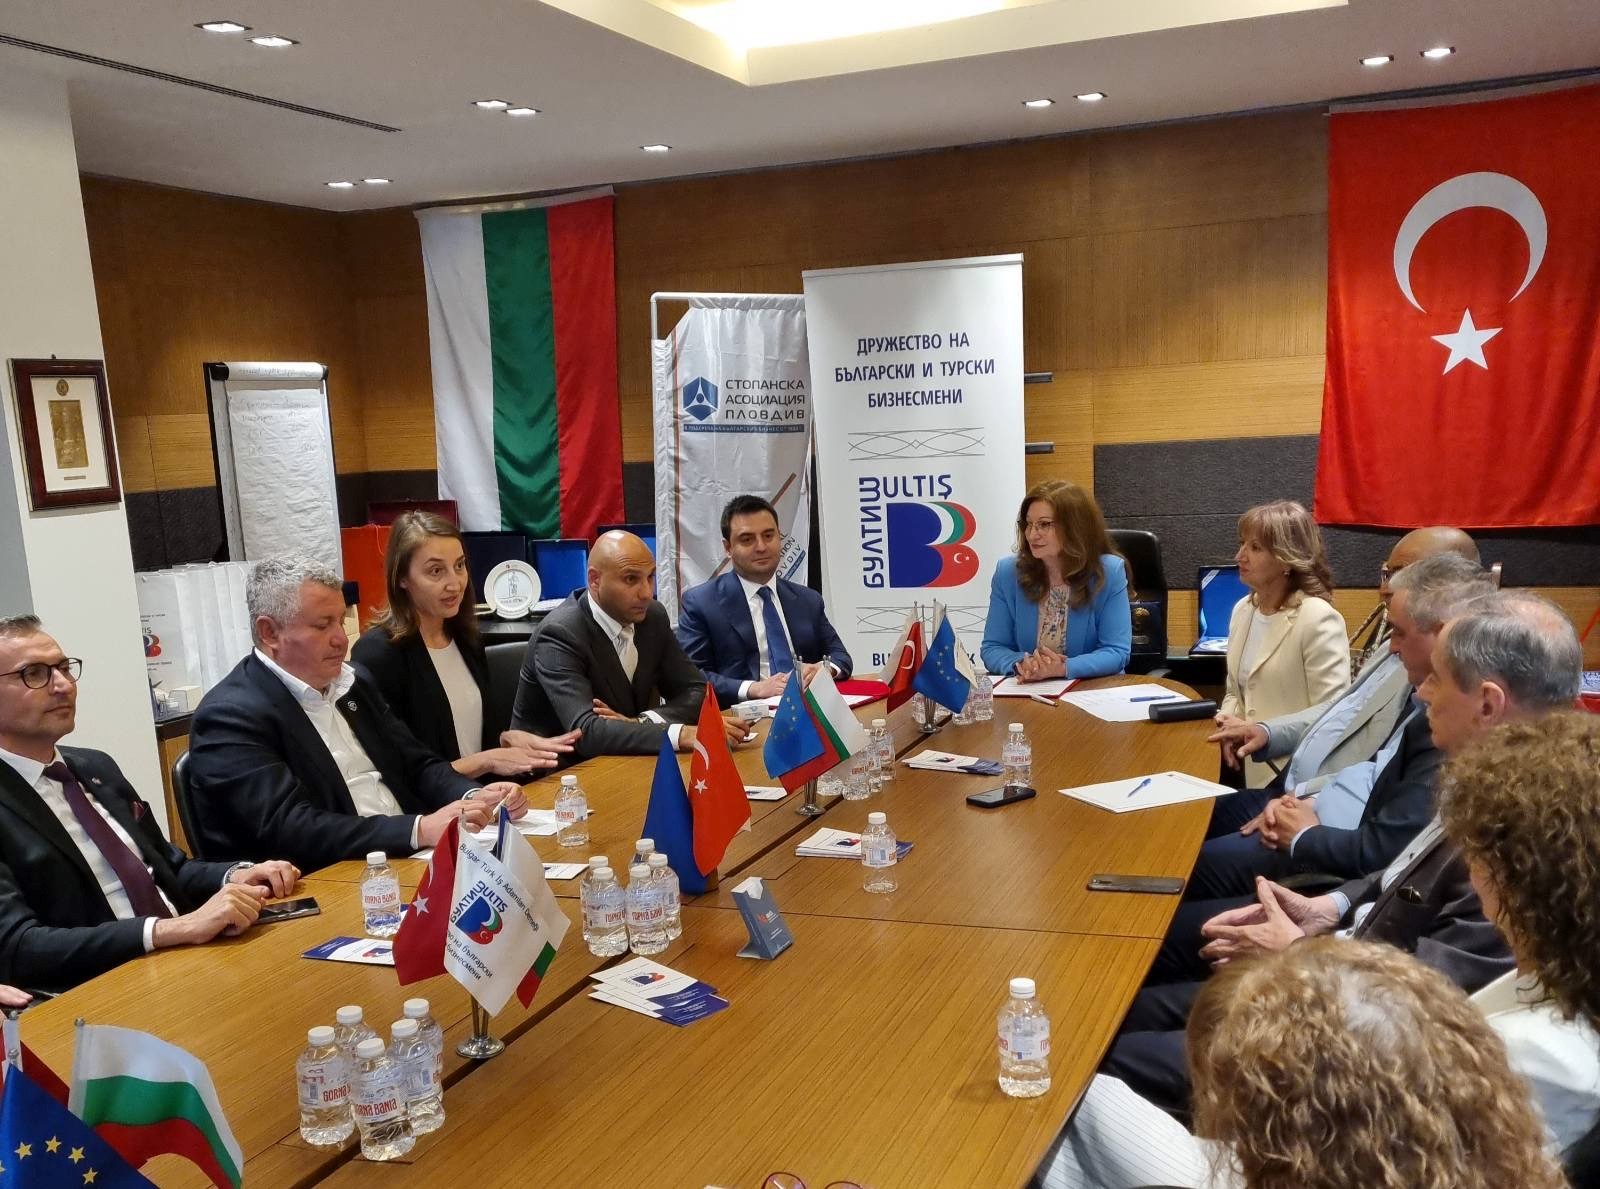 Стопанска асоциация – Пловдив подписа договор за сътрудничество с турския бизнес